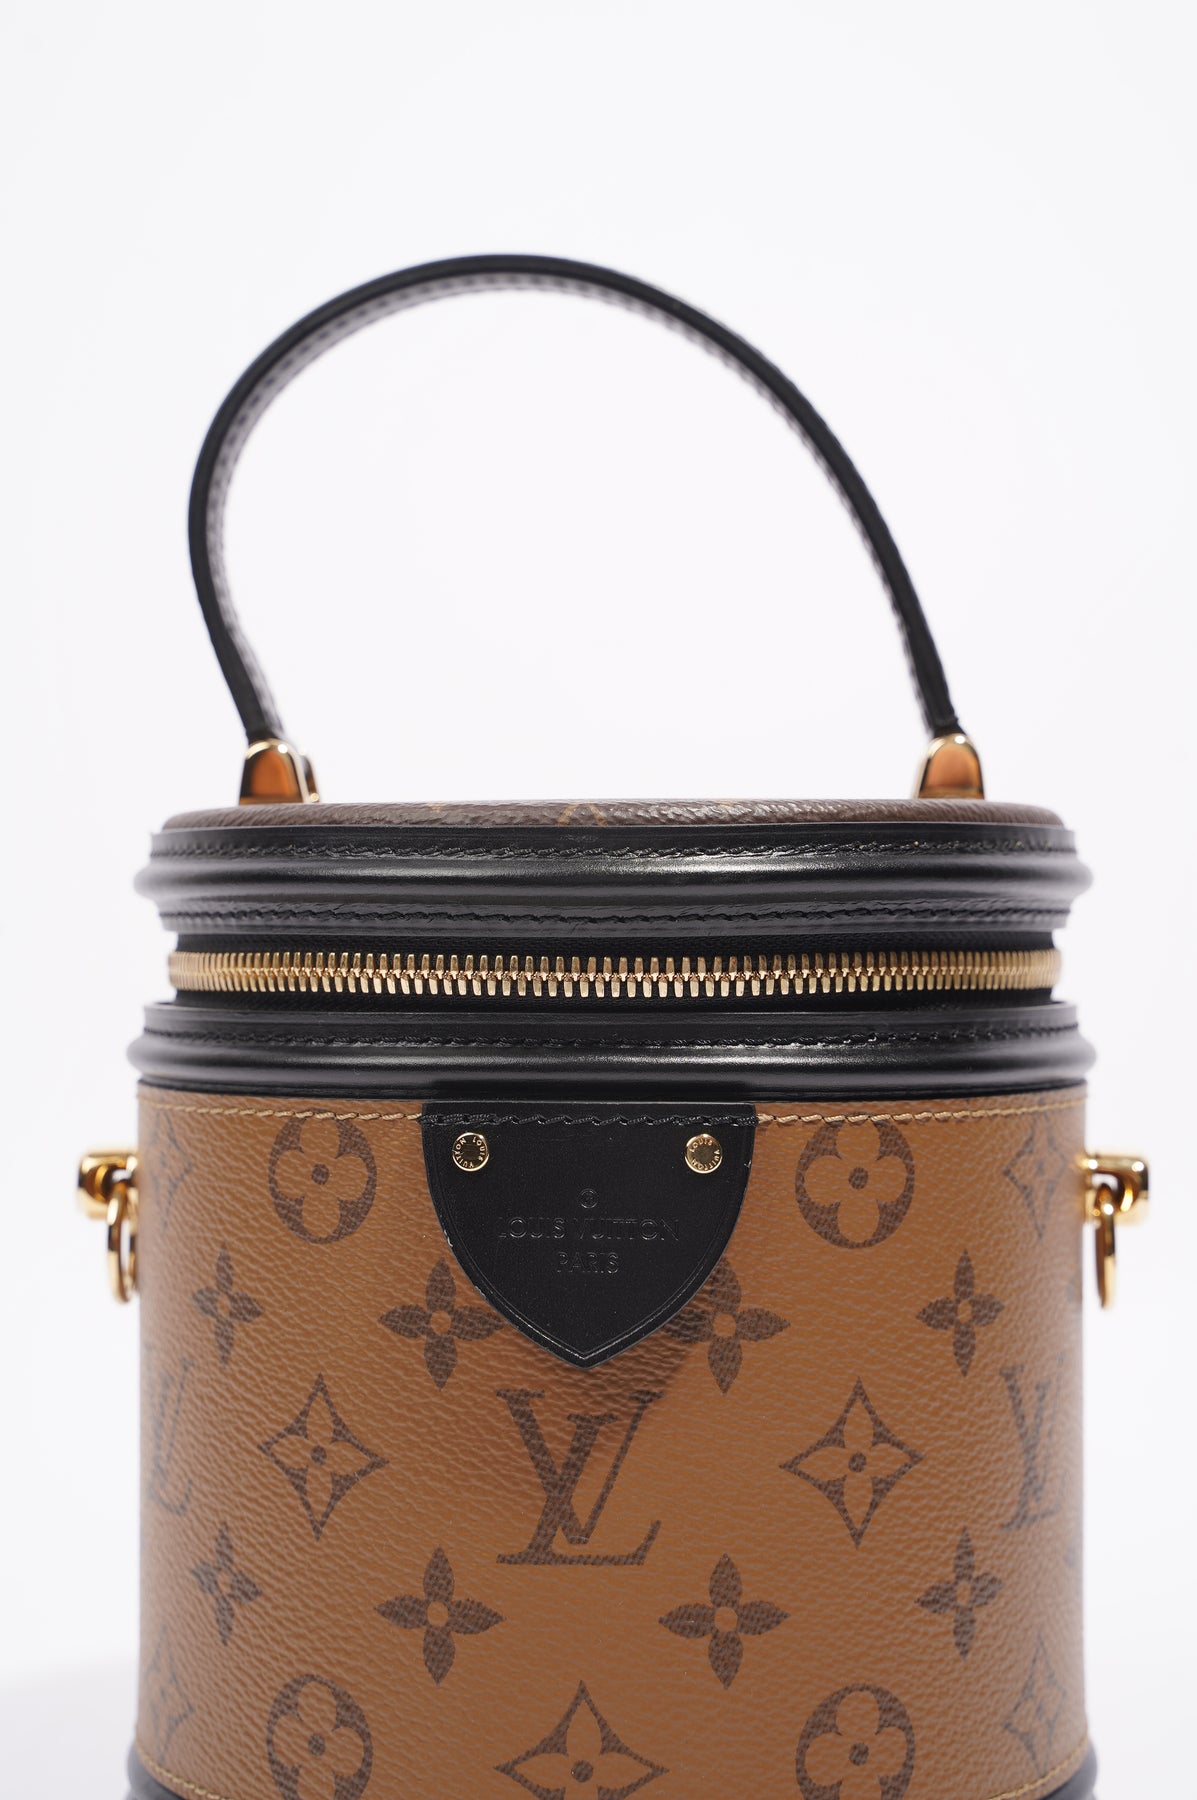 Louis Vuitton Cannes Monogram Tote Bag